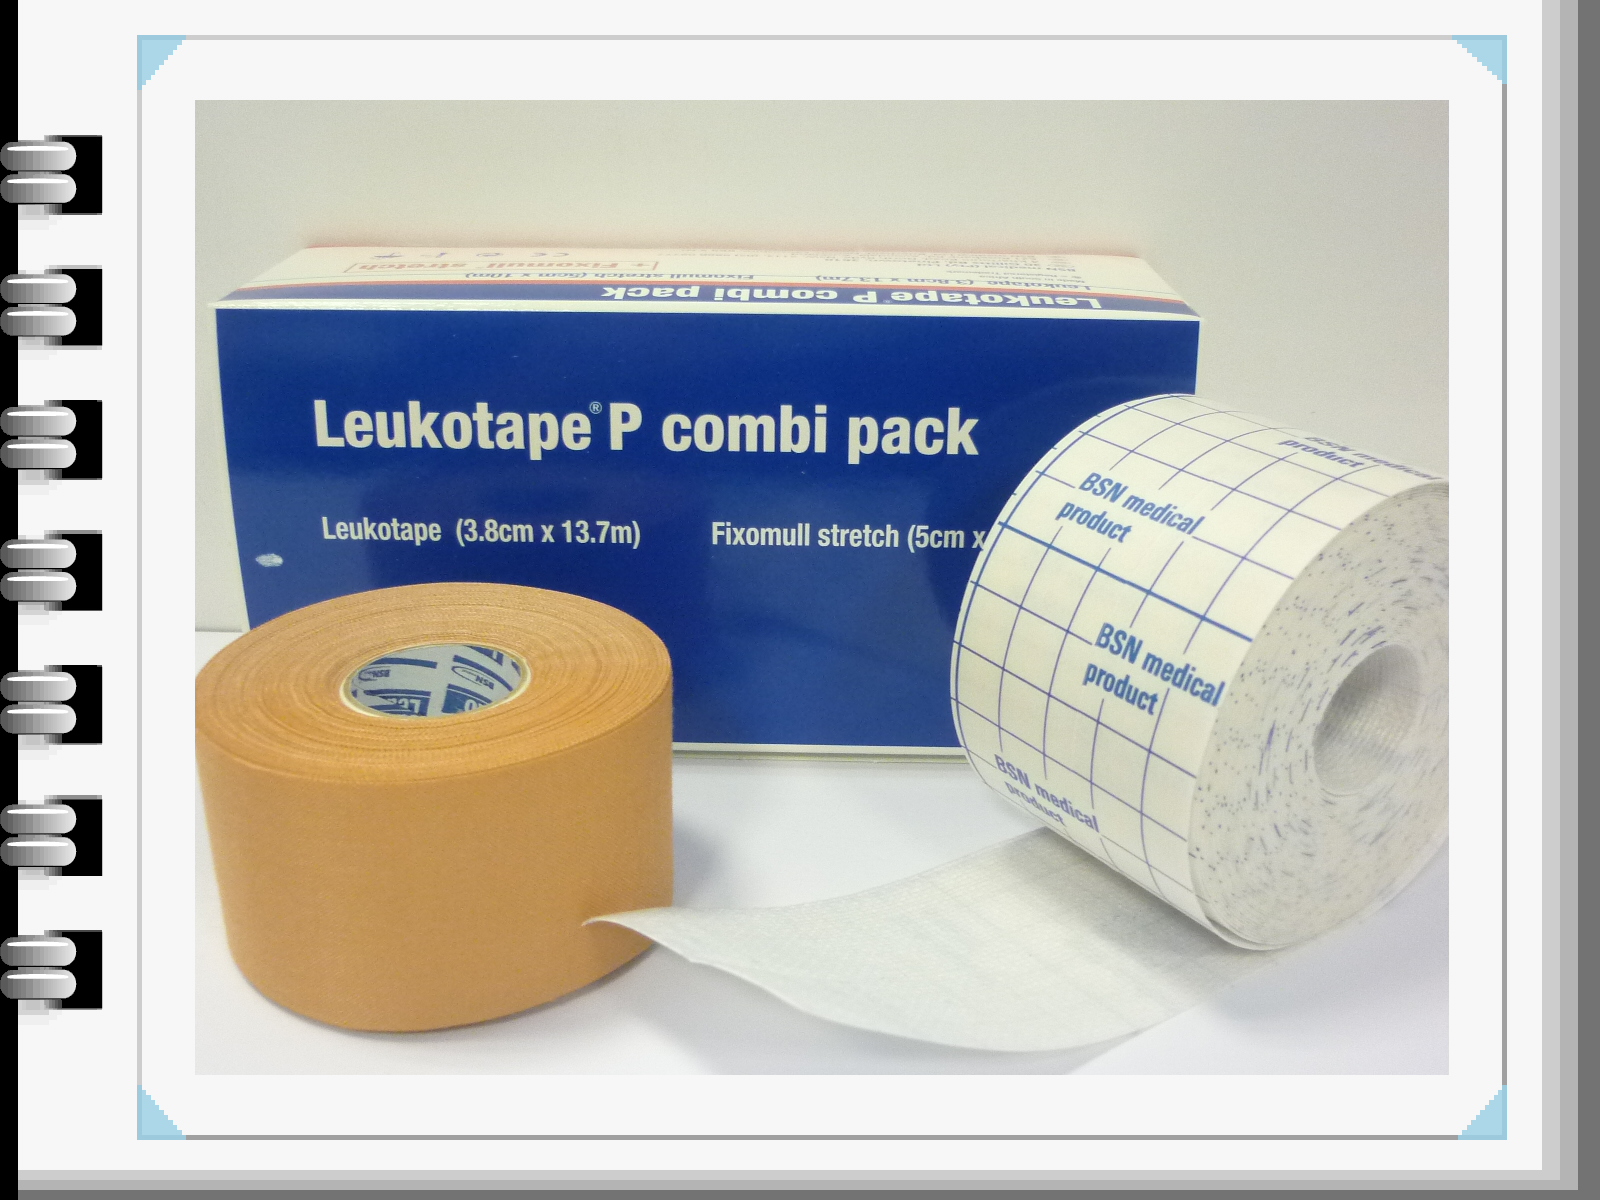 bsnmedical - Leukotape P Combi Pack